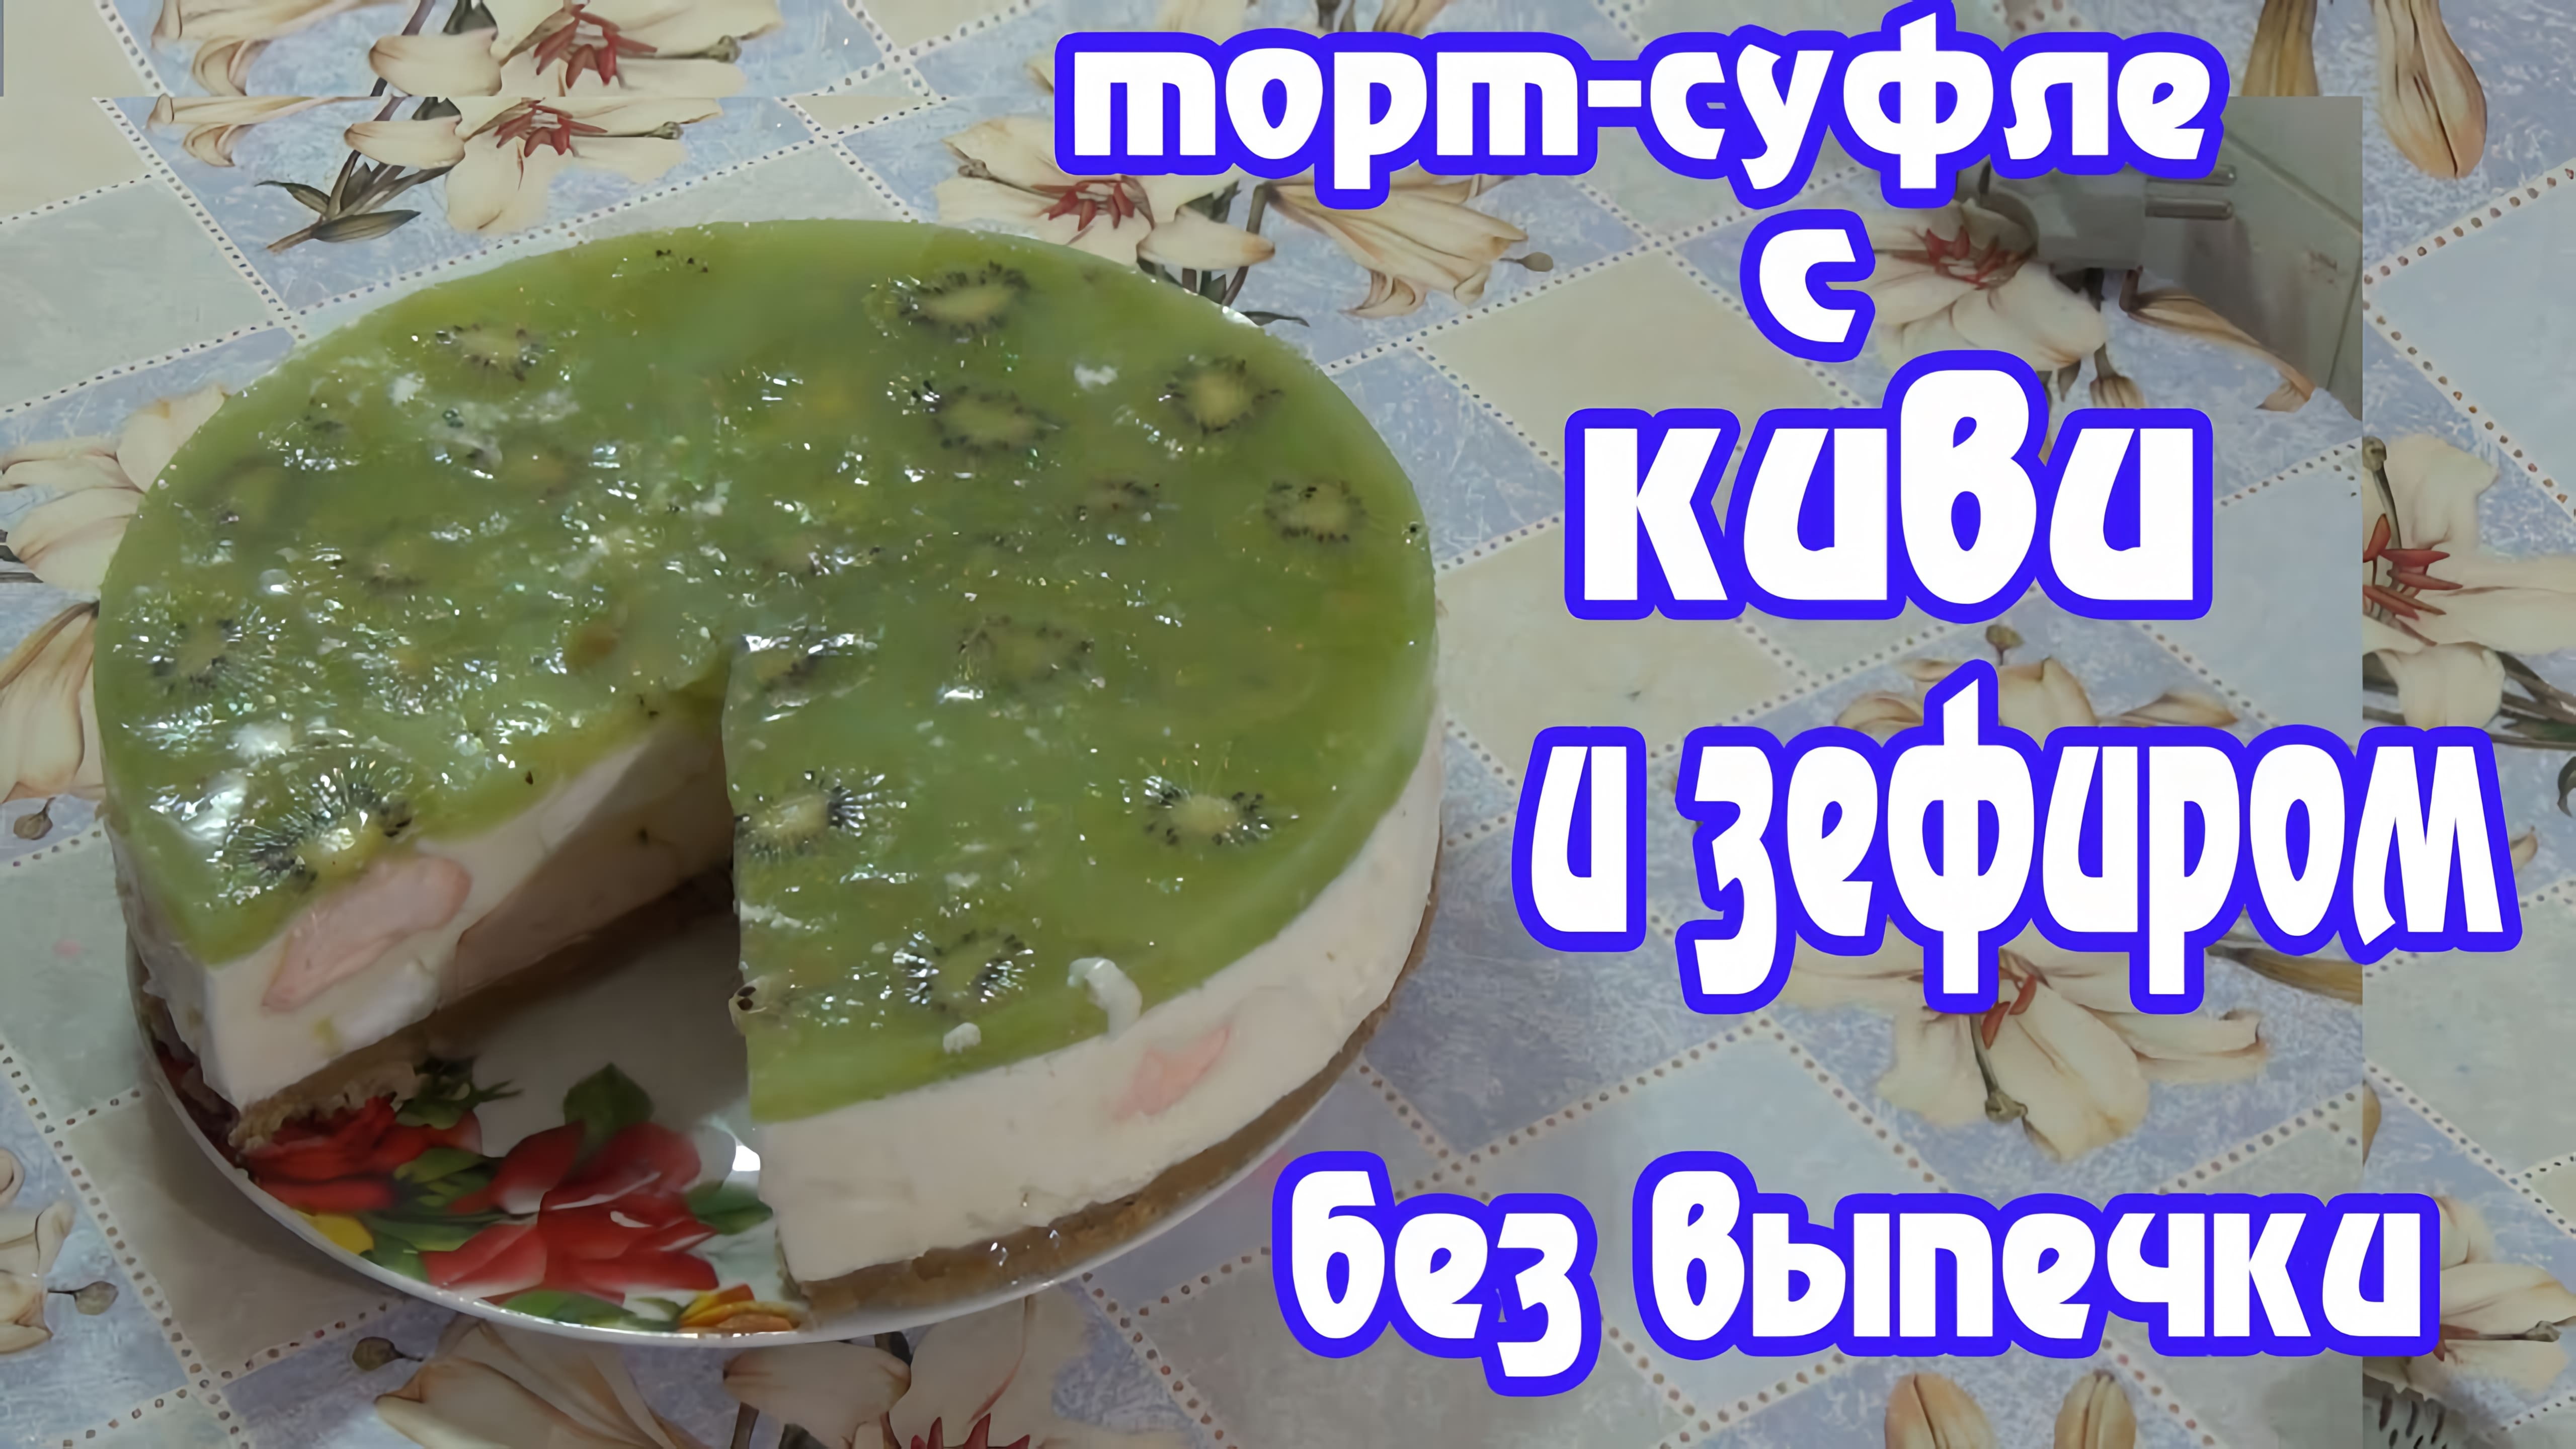 Видео: Торт-суфле с киви и зефиром — нежное и освежающее угощение!